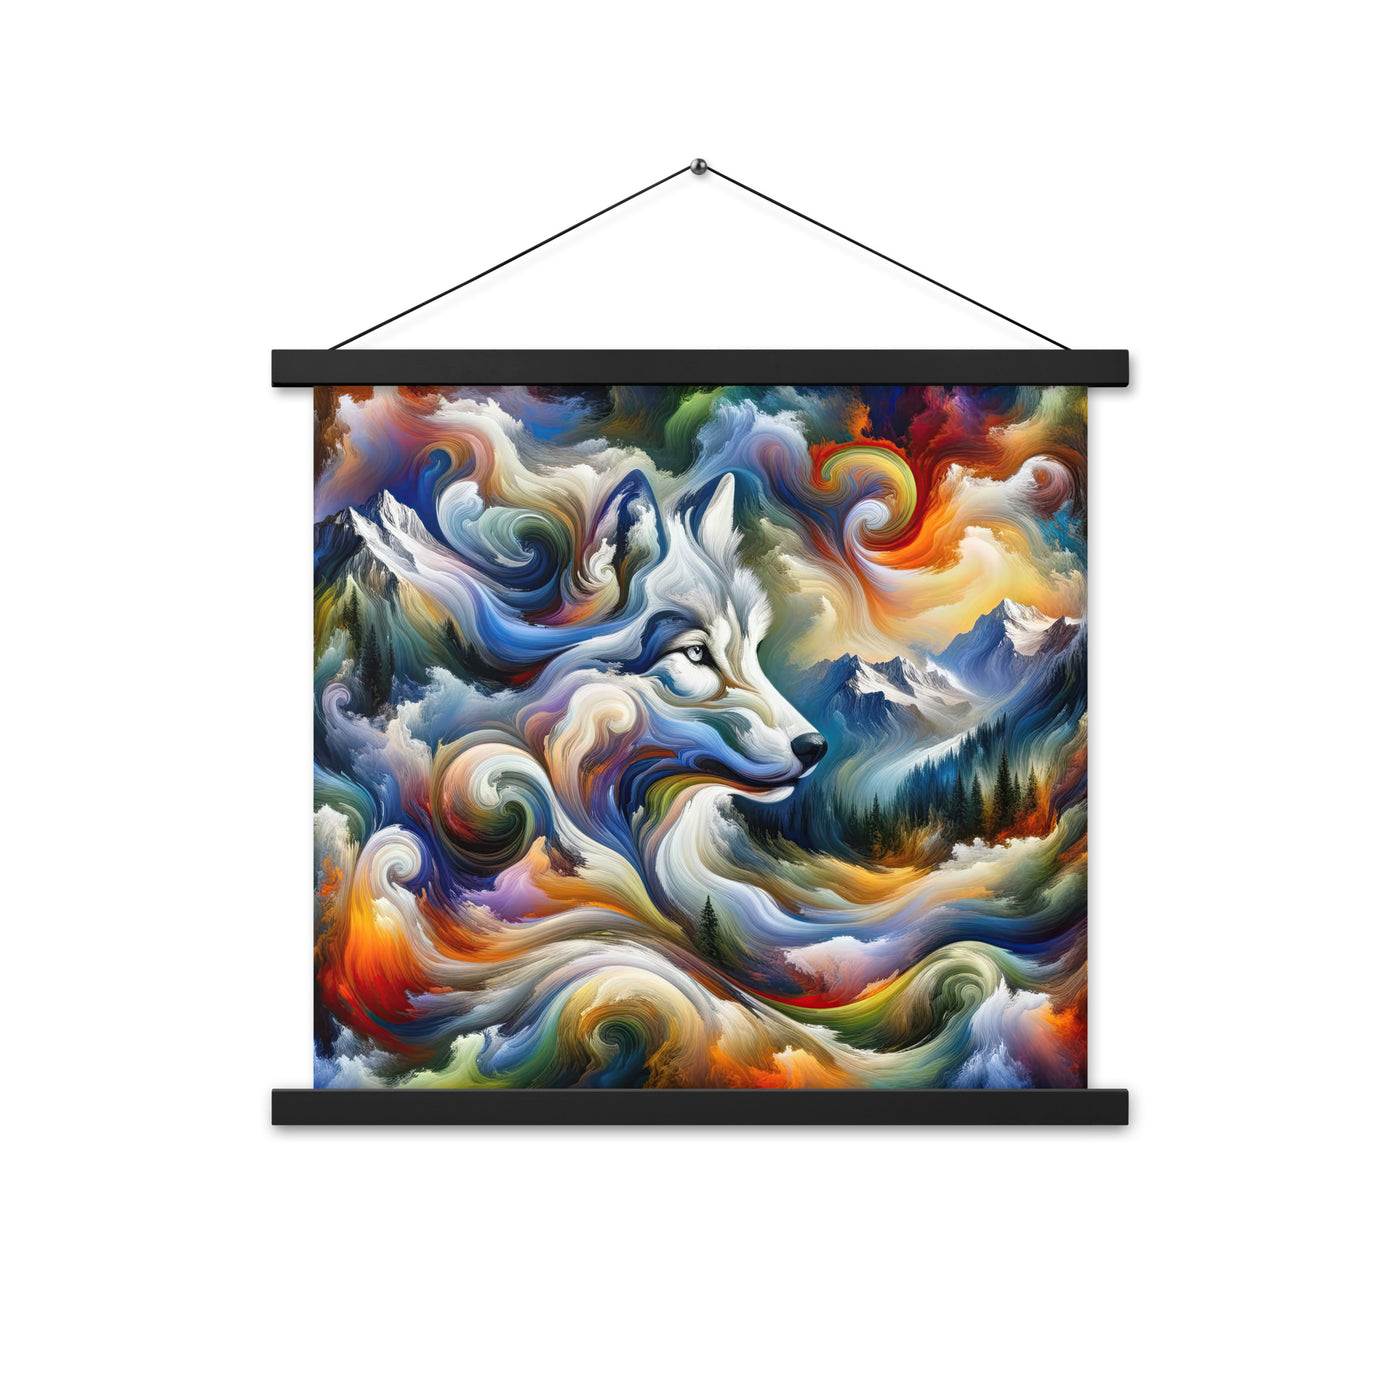 Abstraktes Alpen Gemälde: Wirbelnde Farben und Majestätischer Wolf, Silhouette (AN) - Premium Poster mit Aufhängung xxx yyy zzz 45.7 x 45.7 cm